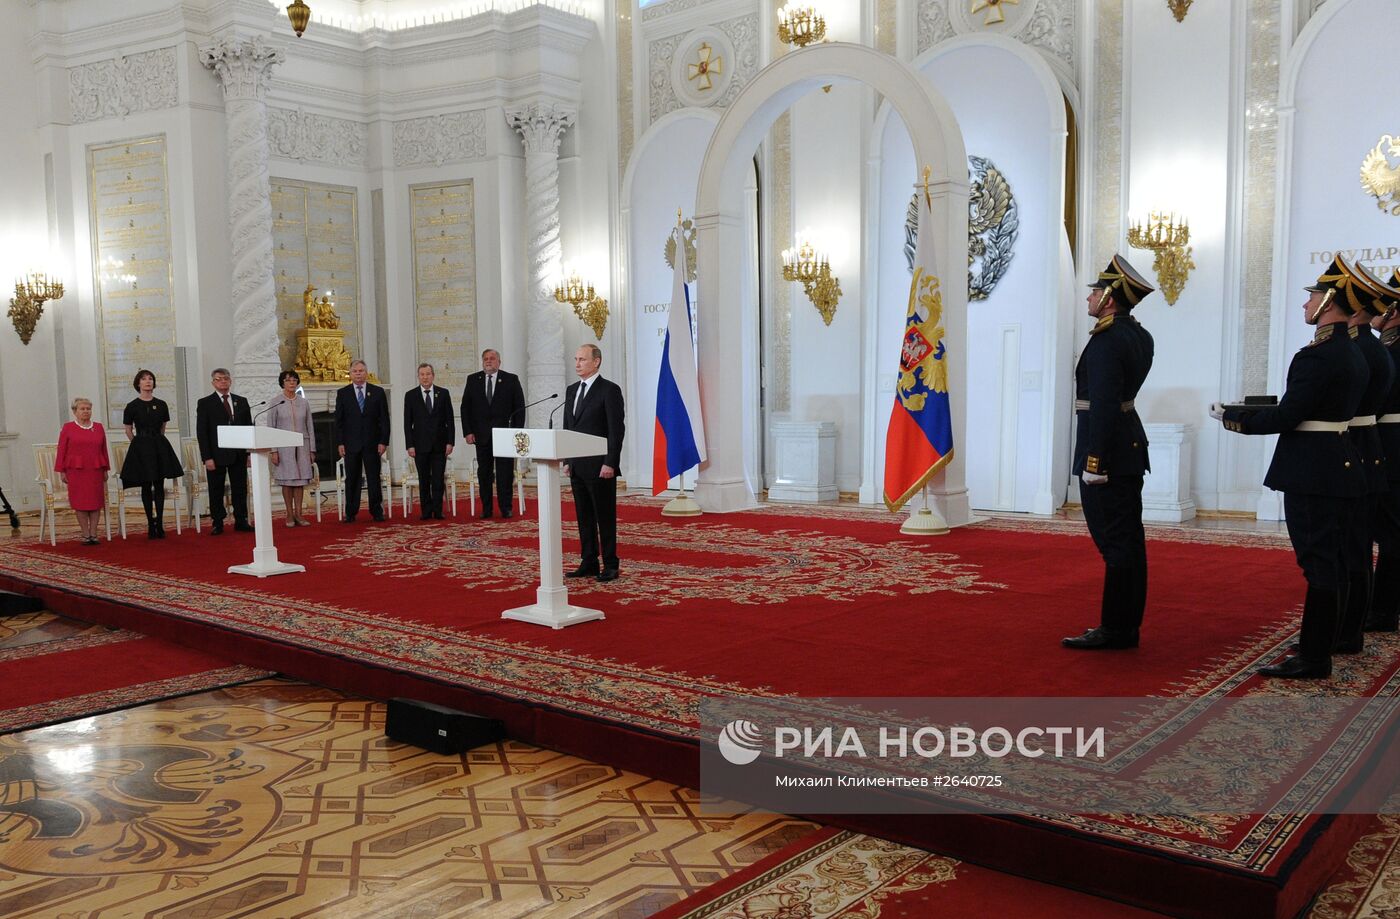 Вручение государственных премий в День России в Кремле